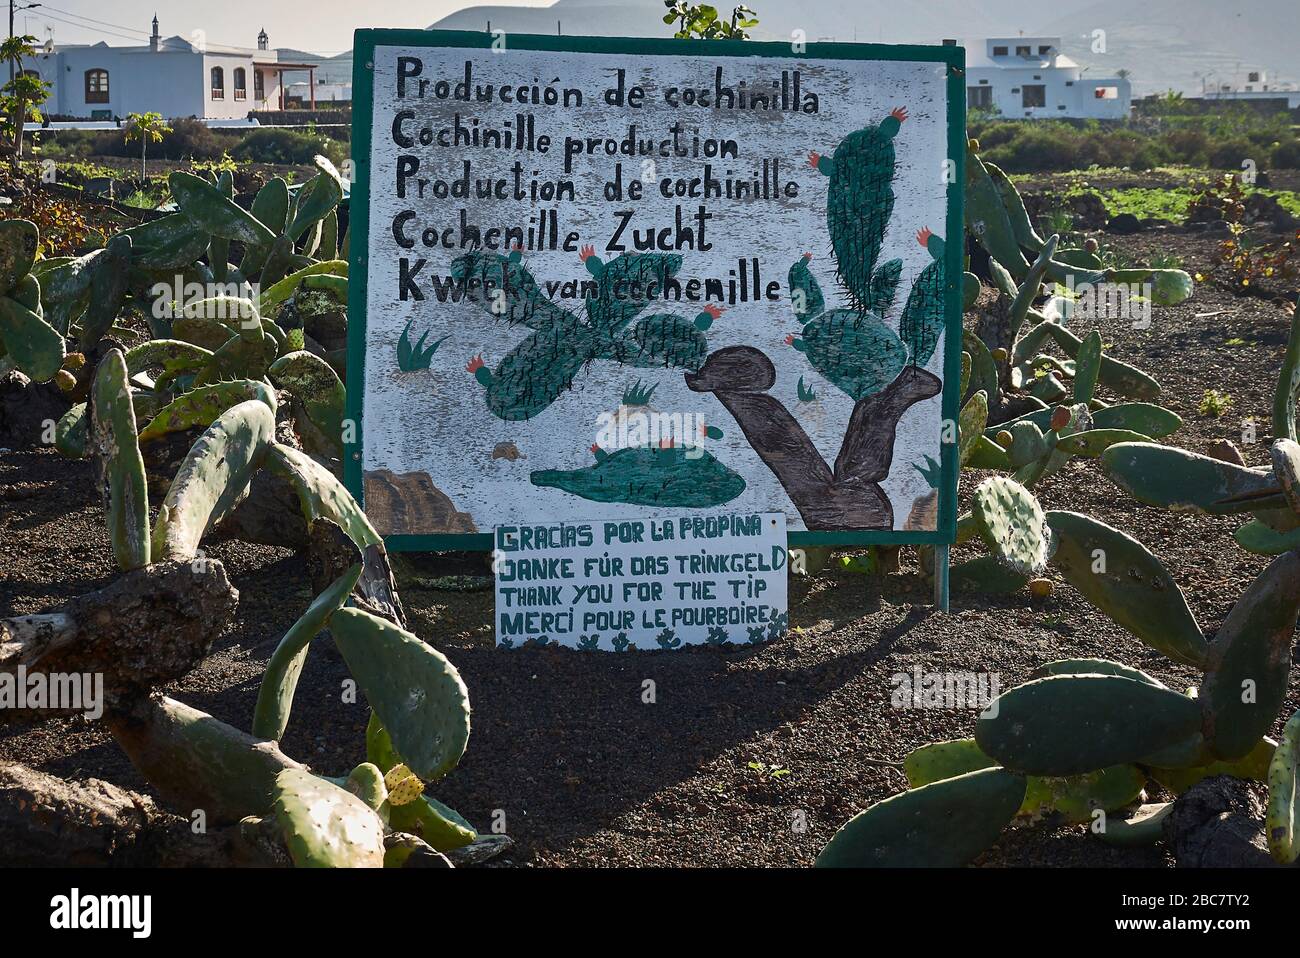 Un cartello in un campo di cactus famiglia a Guatiza informa in cinque lingue diverse della produzione Cochinille. Foto Stock